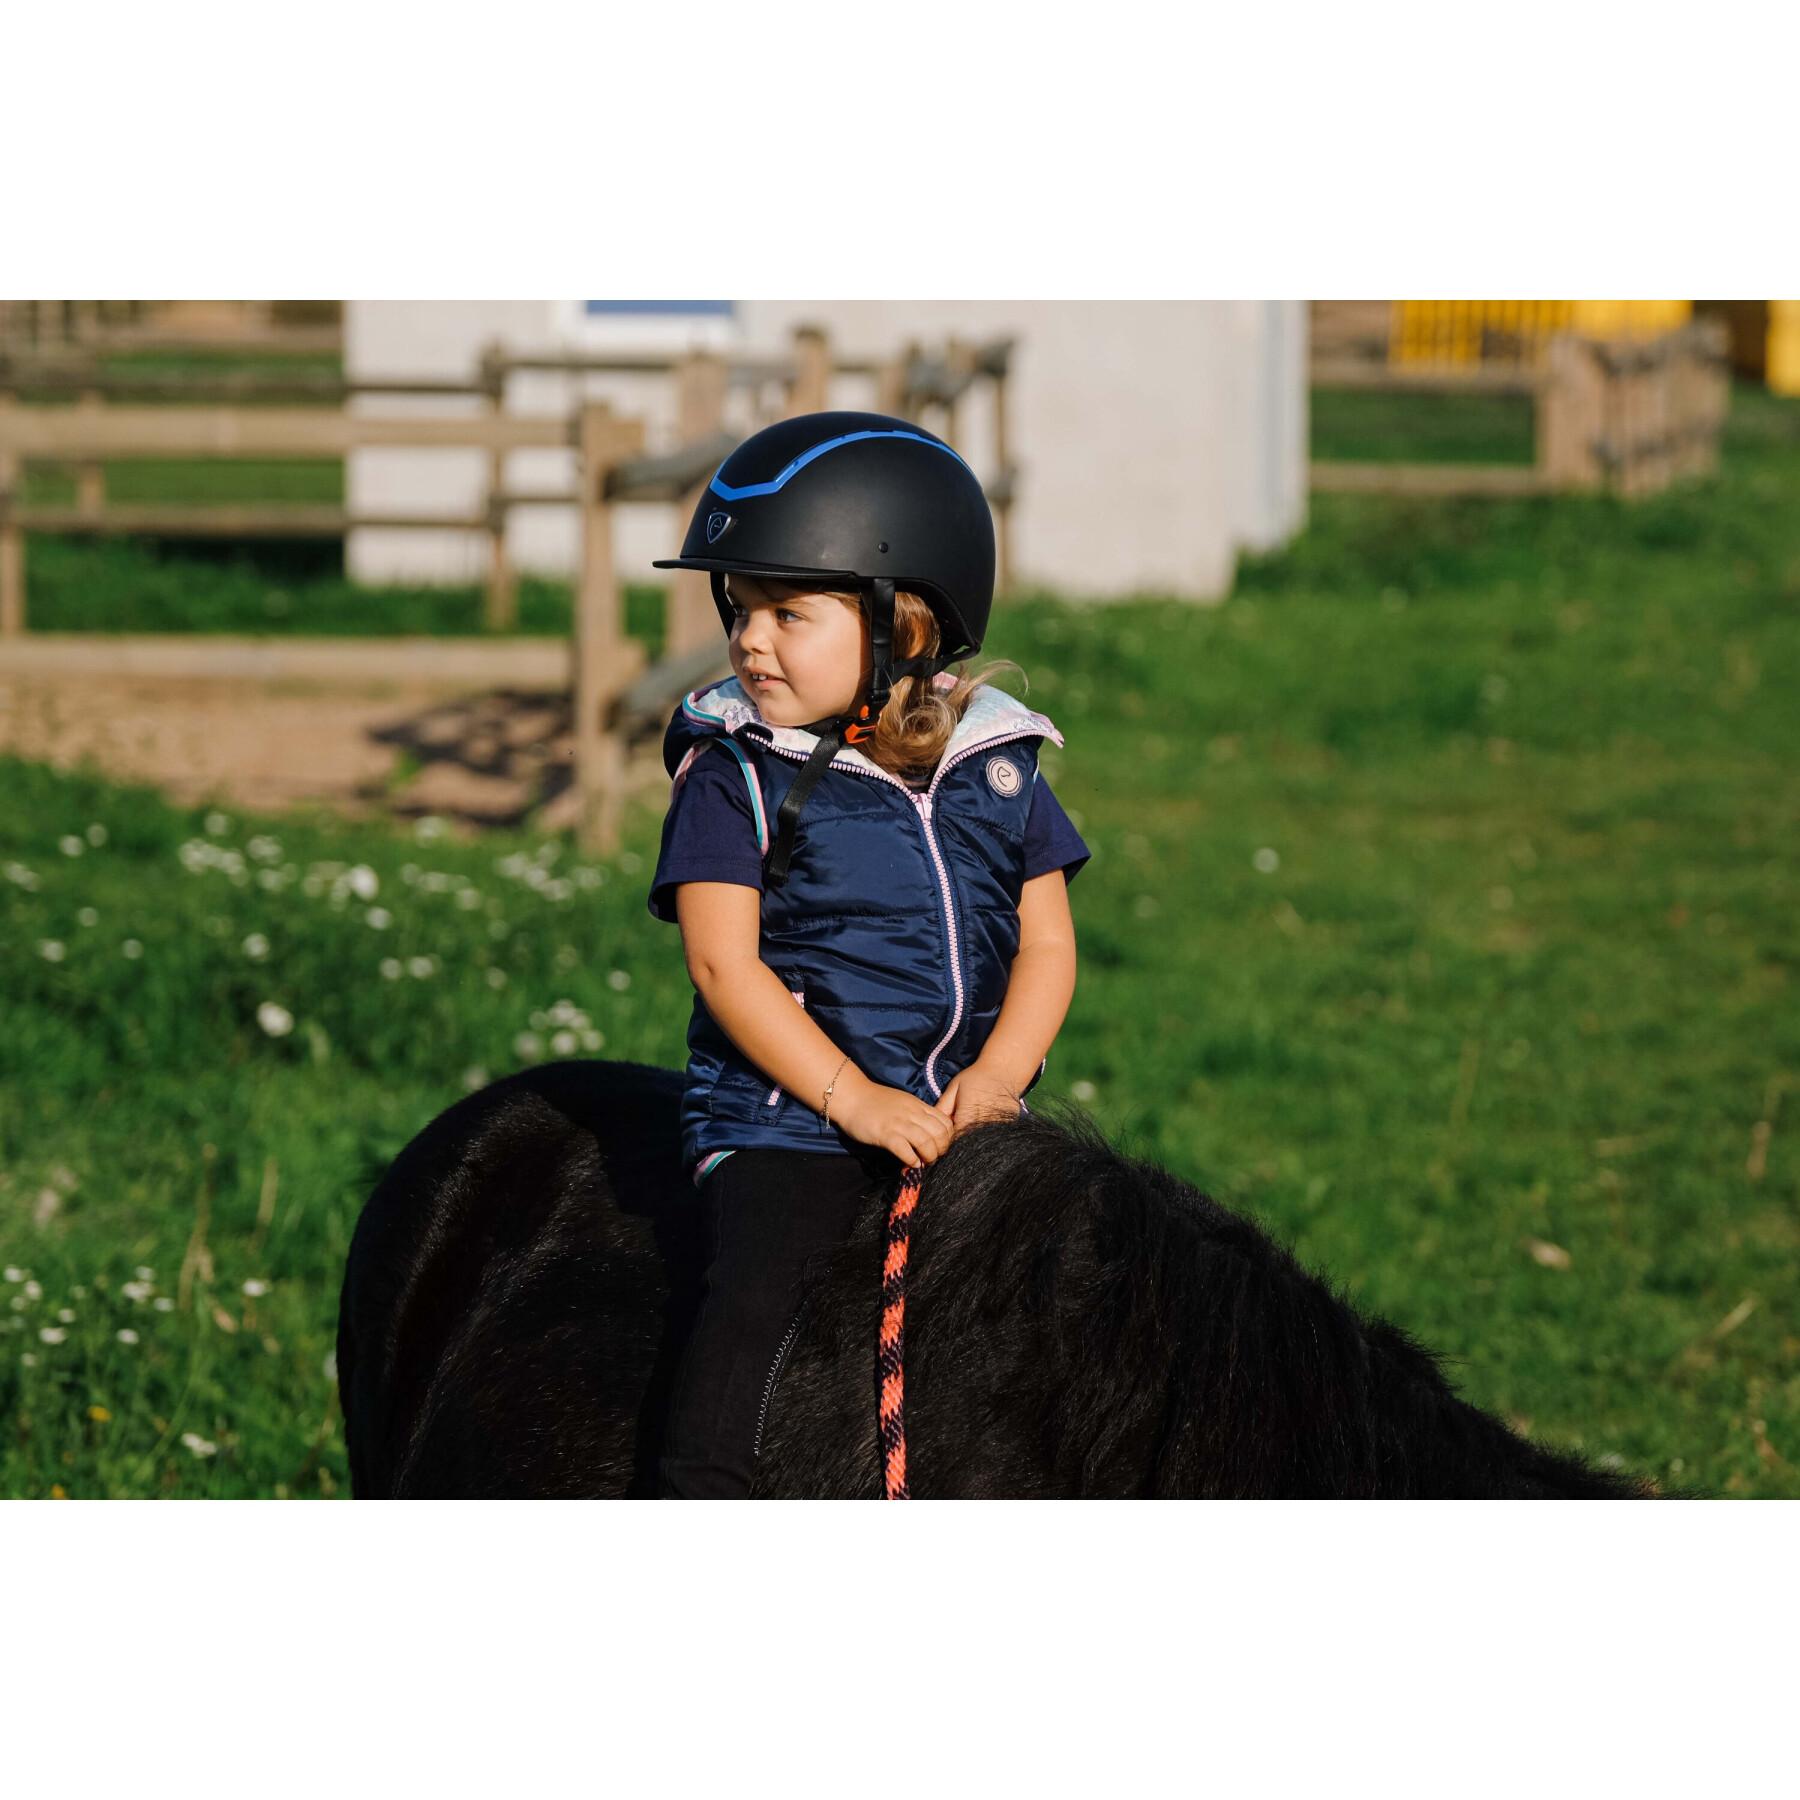 Chaqueta de equitación reversible sin mangas para niños Equithème Mady